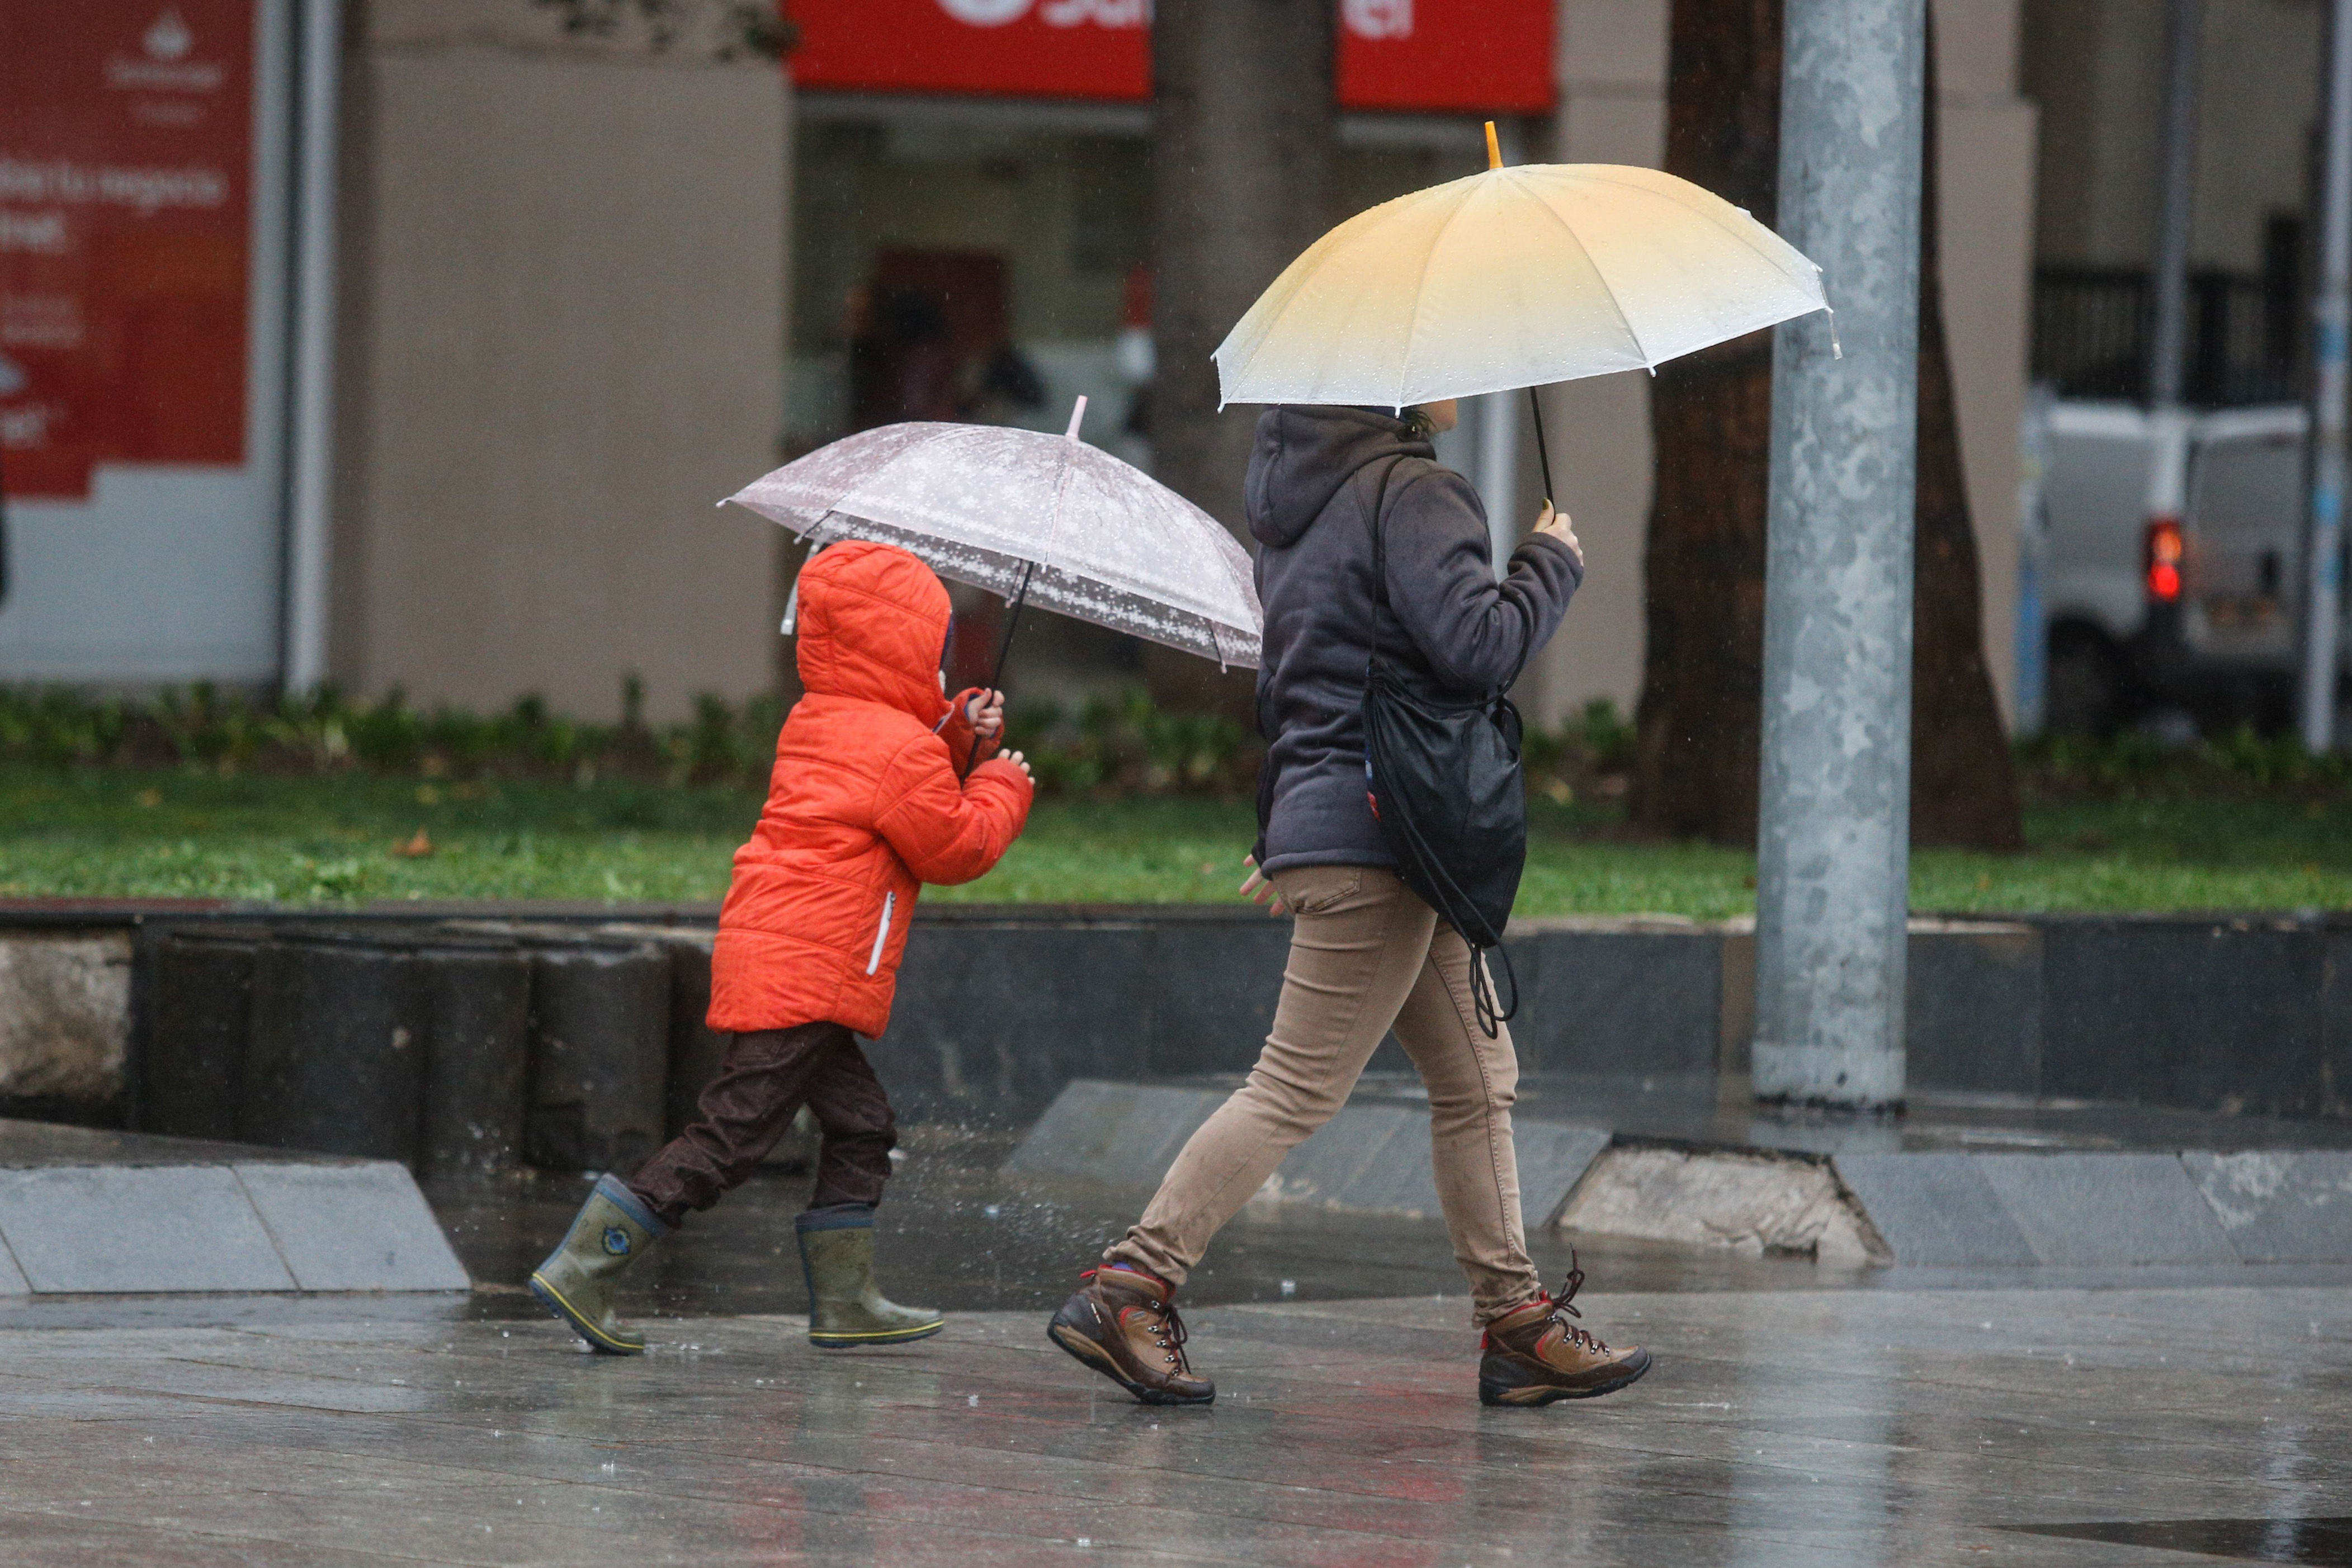 lluvia en santiago: cuántos milímetros podrían caer en el mes de abril según los expertos